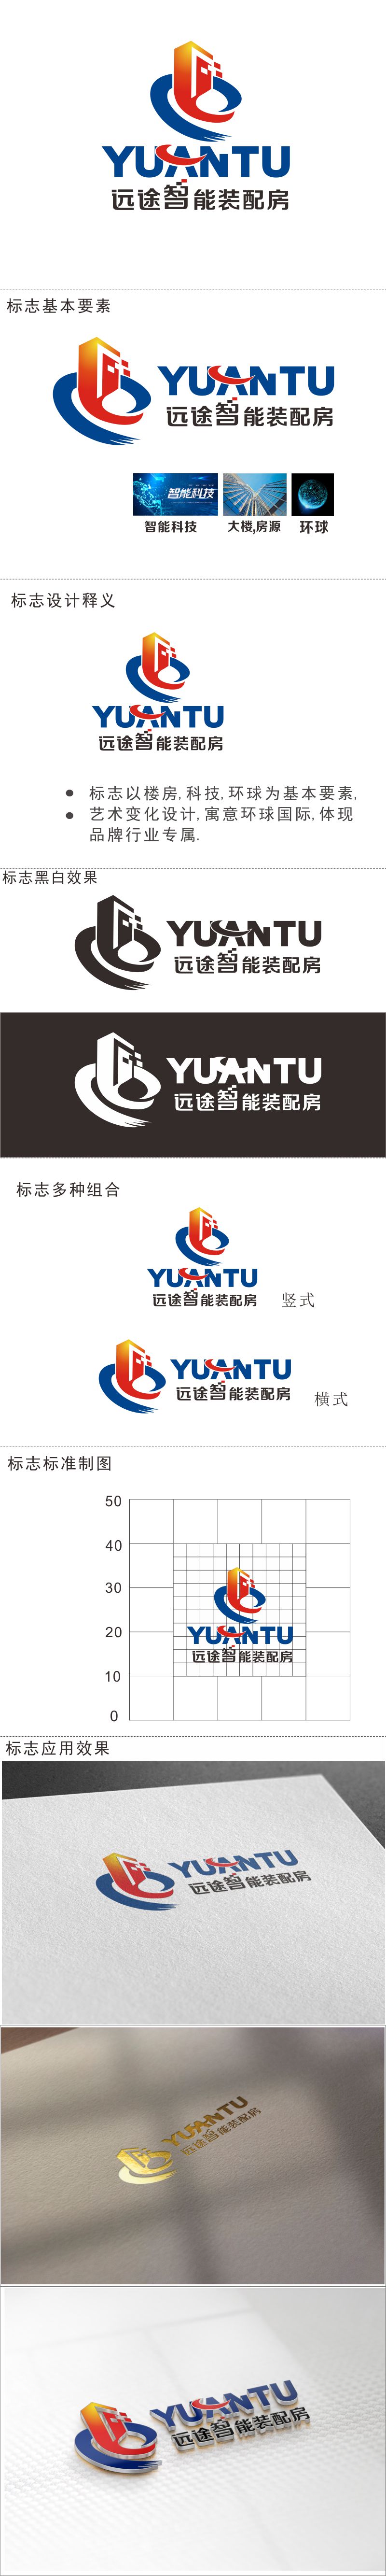 胡红志的江苏远途智能装配房有限公司logo设计